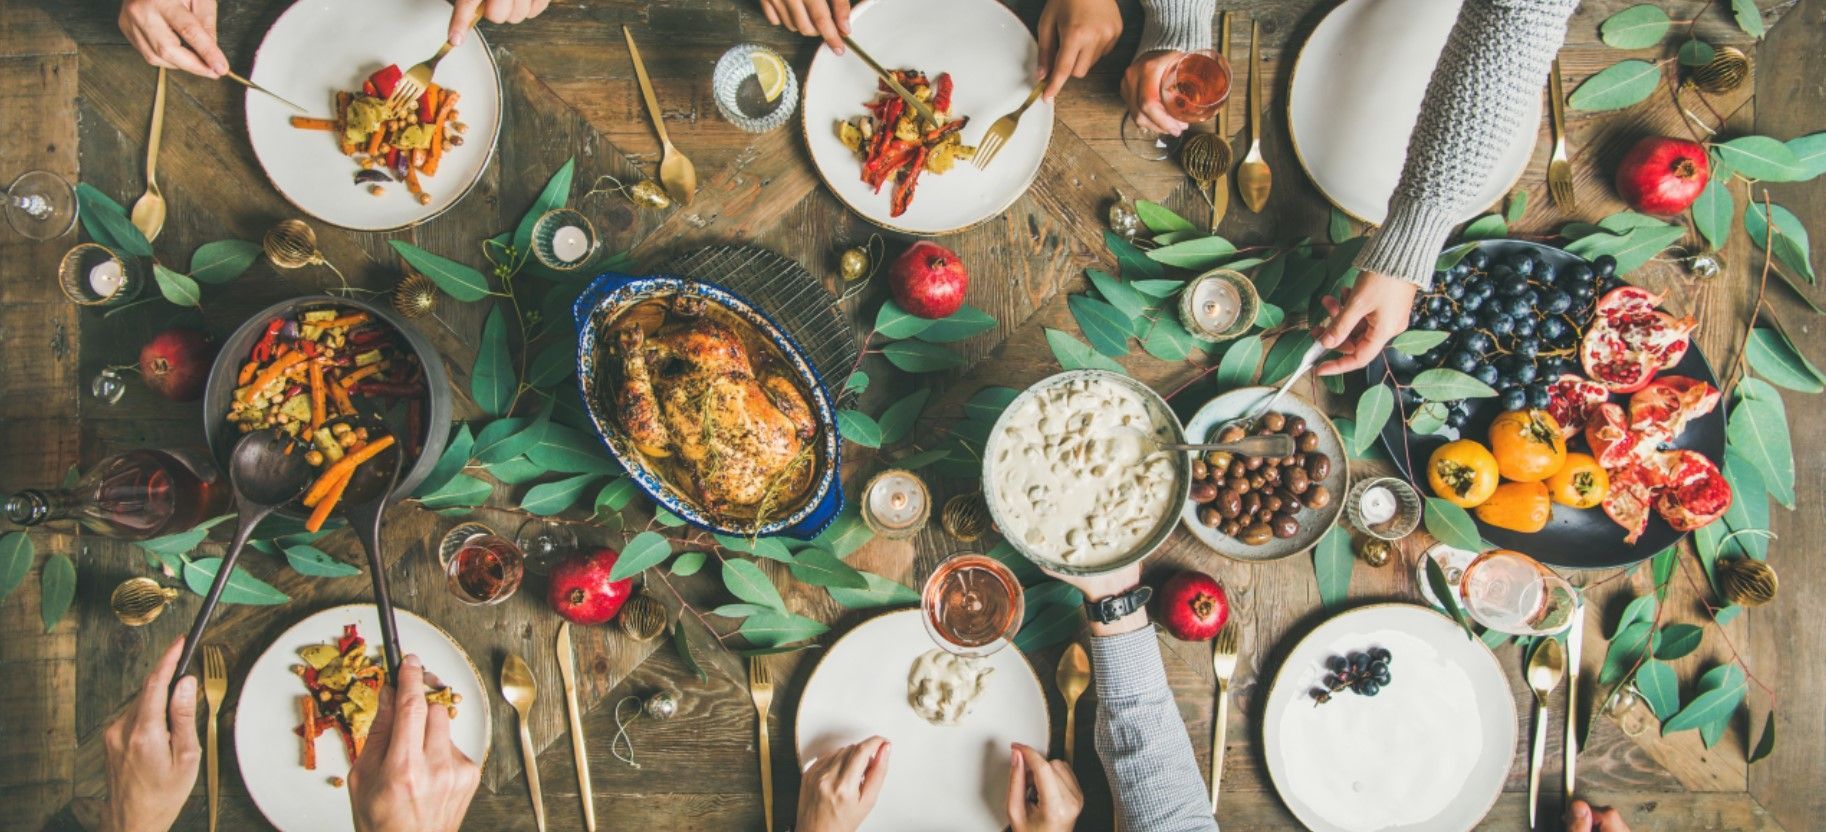 Як зробити новорічний стіл здоровим: рецепти корисних страв, які сподобаються усім - Новини Смачно